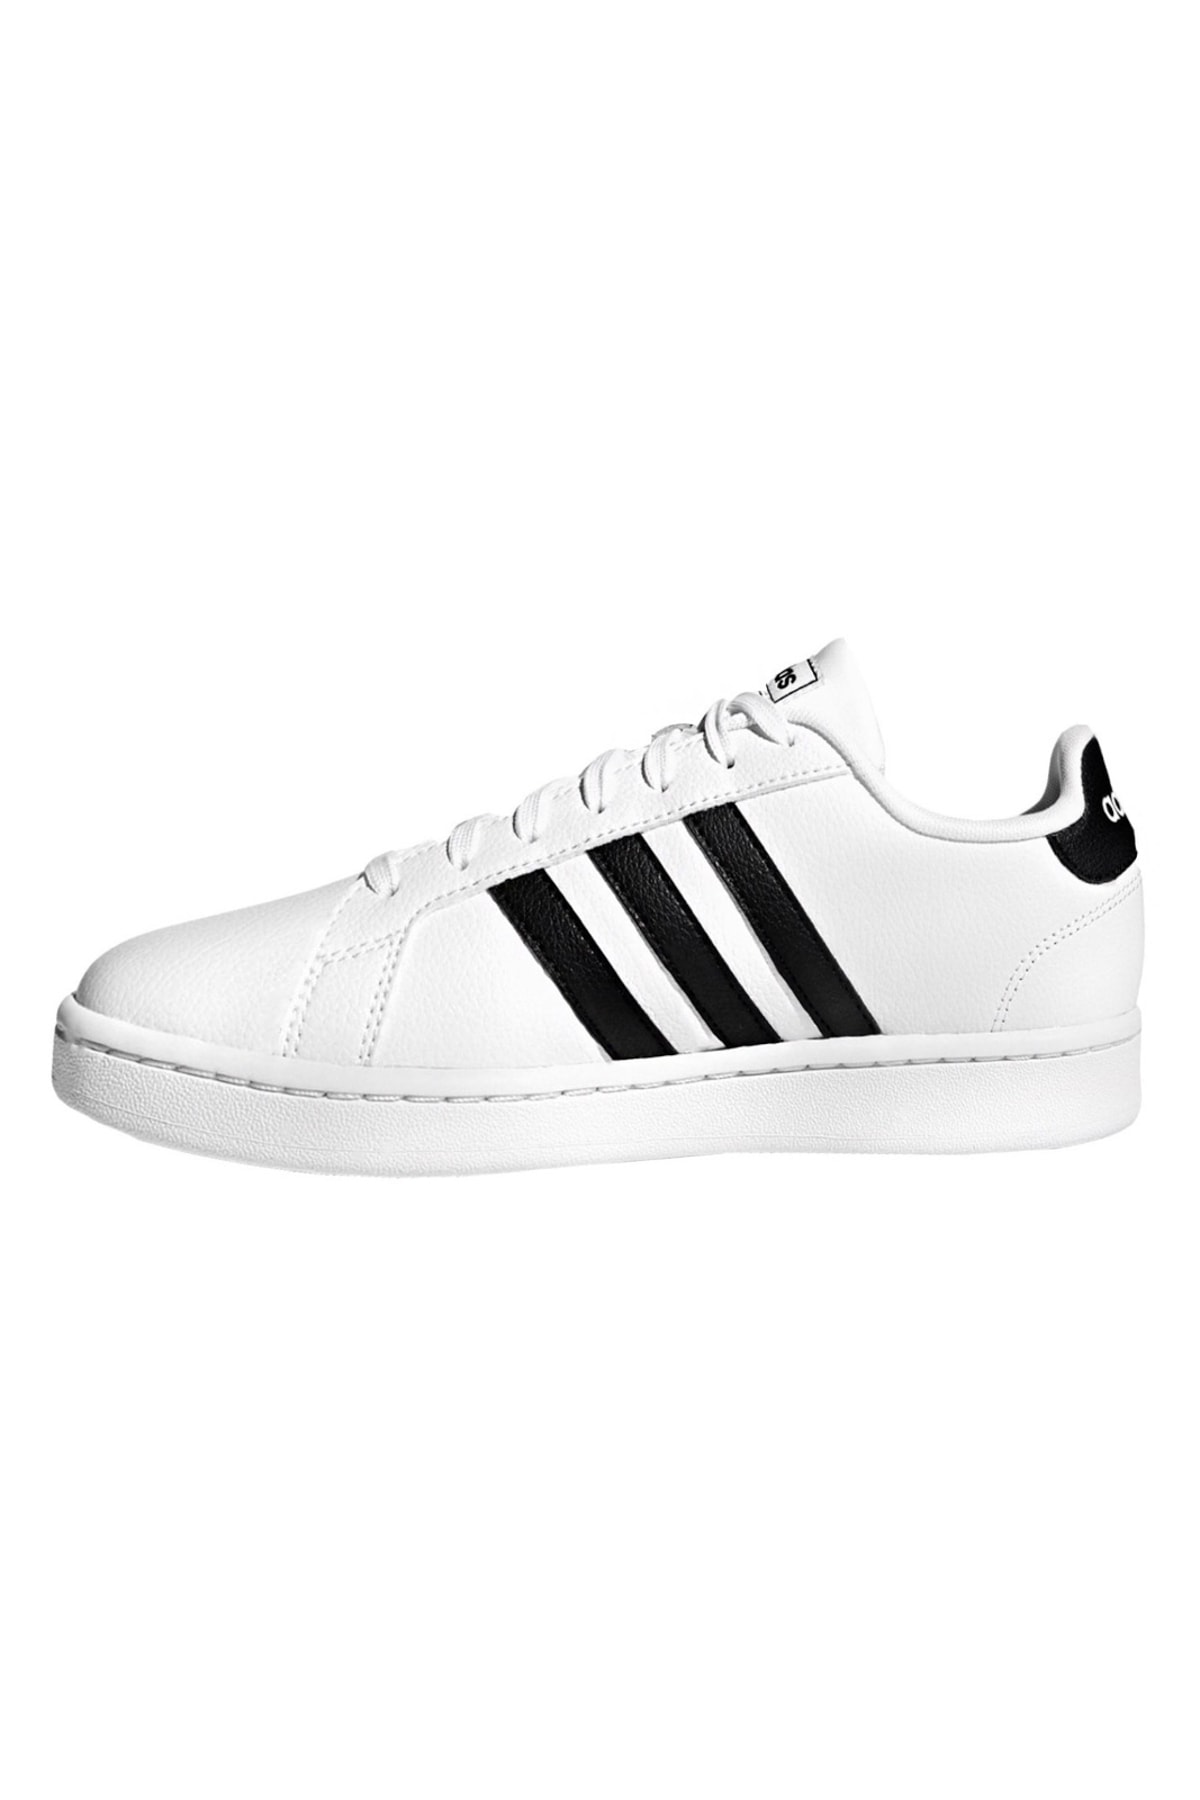 Кроссовки - Белый Плоские adidas, Adidas